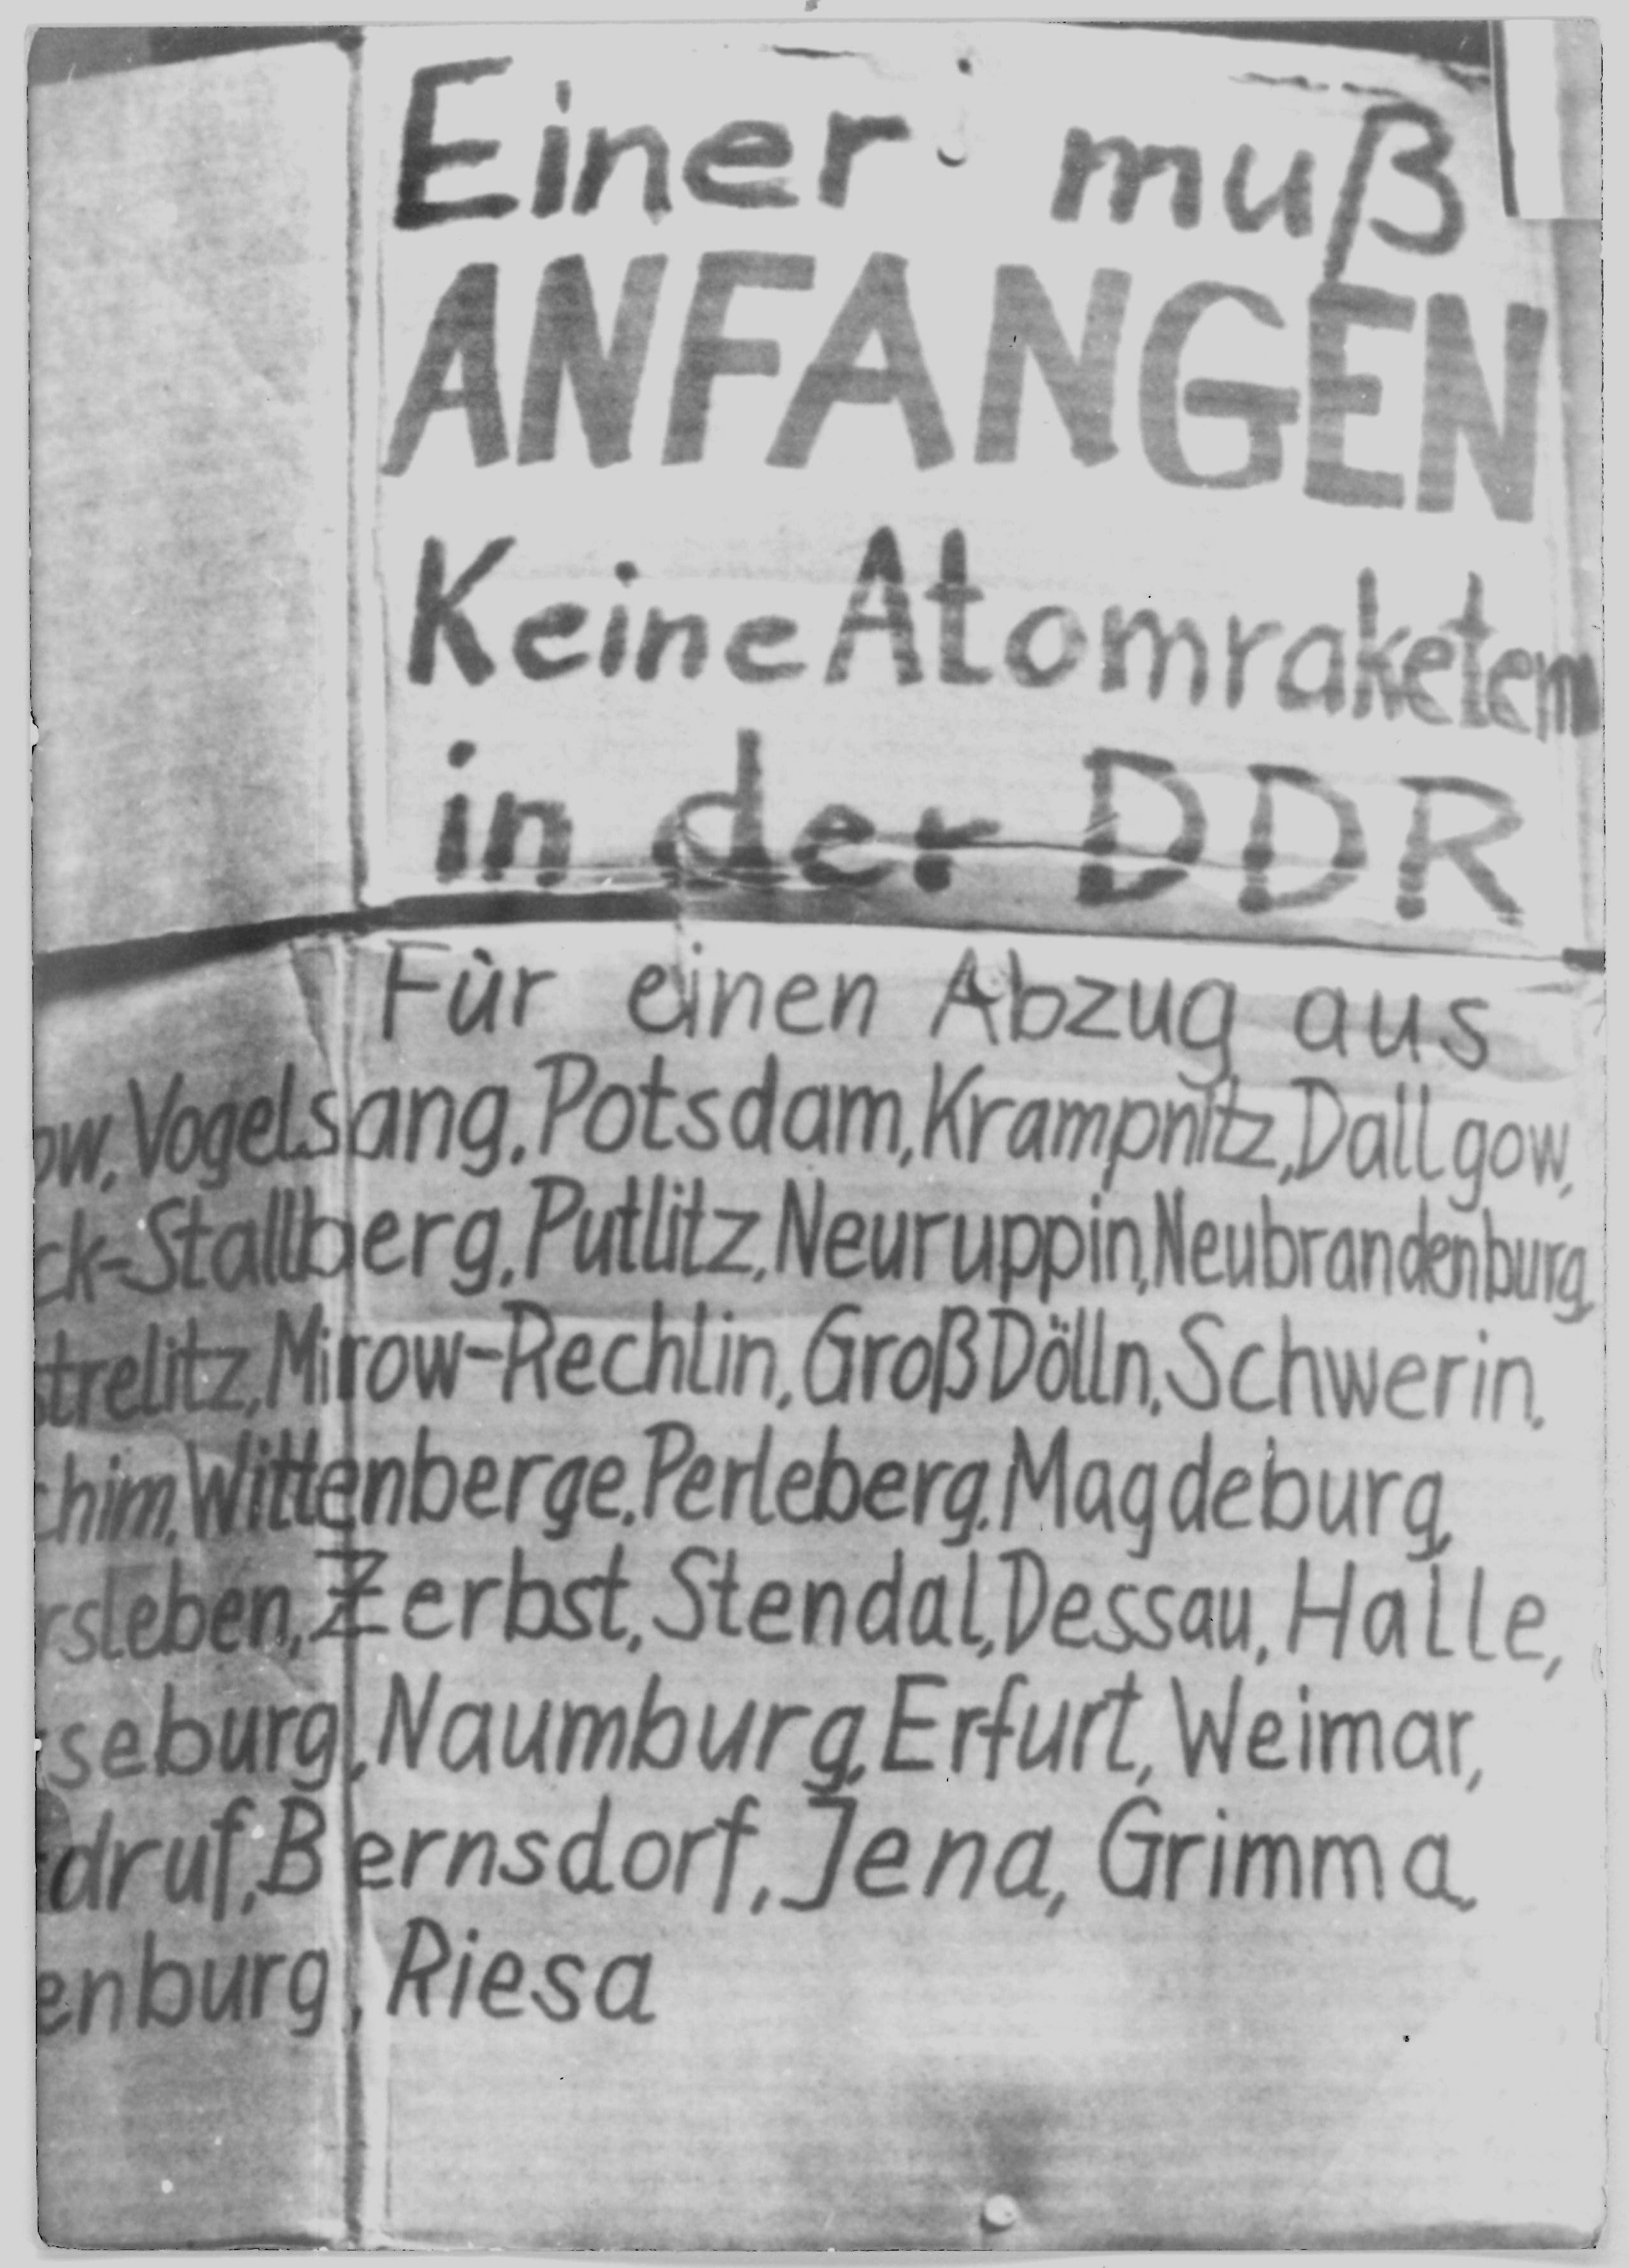 Olof-Palme-Marsch 1987: Plakat mit der Beschriftung: "Einer muß anfangen Keine Atomraketen in der DDR" (DDR Geschichtsmuseum im Dokumentationszentrum Perleberg CC BY-SA)